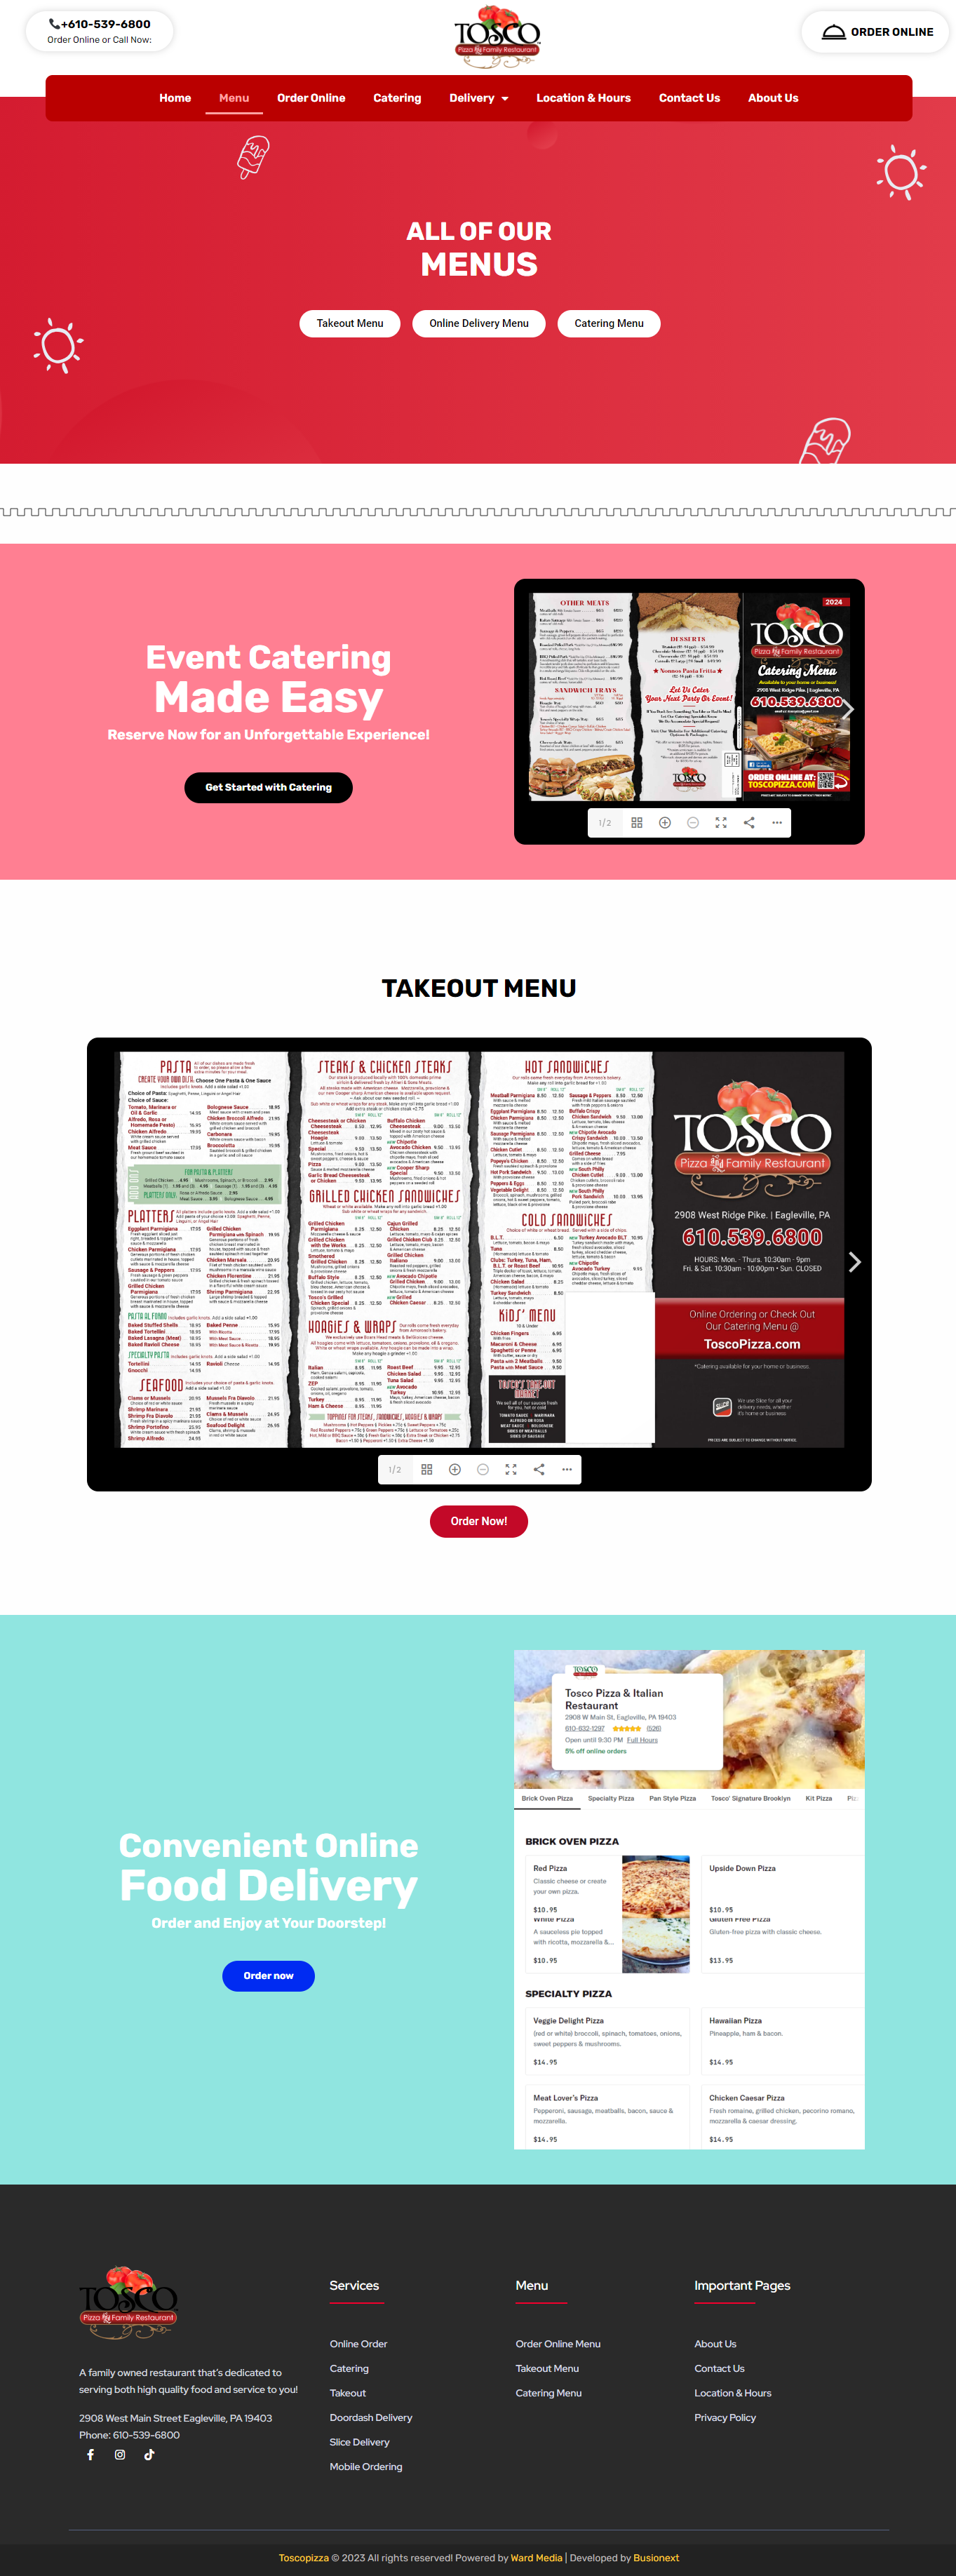 Tosco Pizza & Italian Restaurant - ward media - toscos pizza